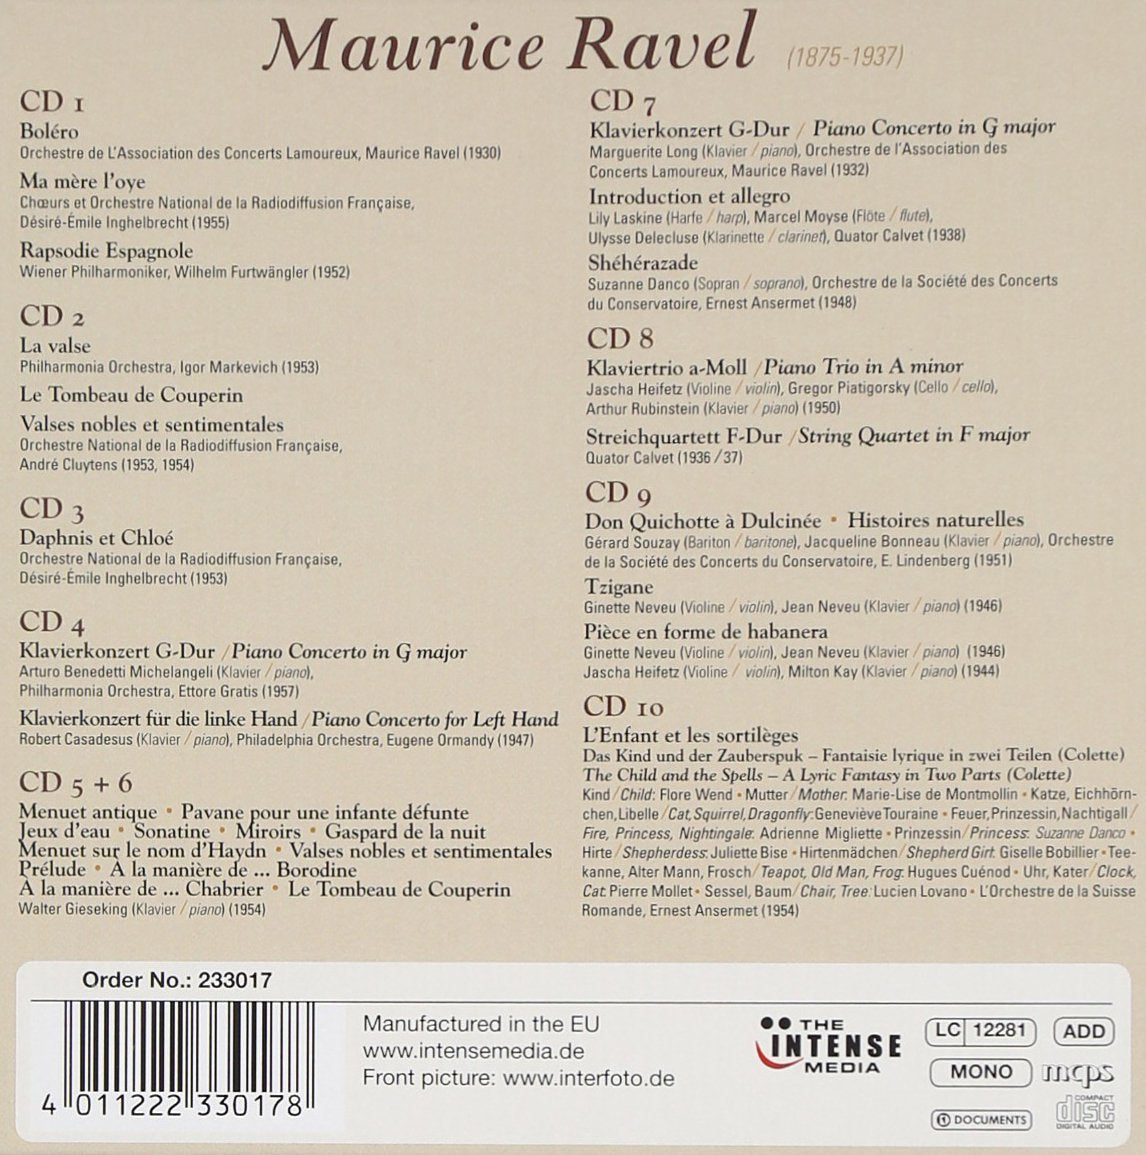 RAVEL: A PORTRAIT (10 CDS)